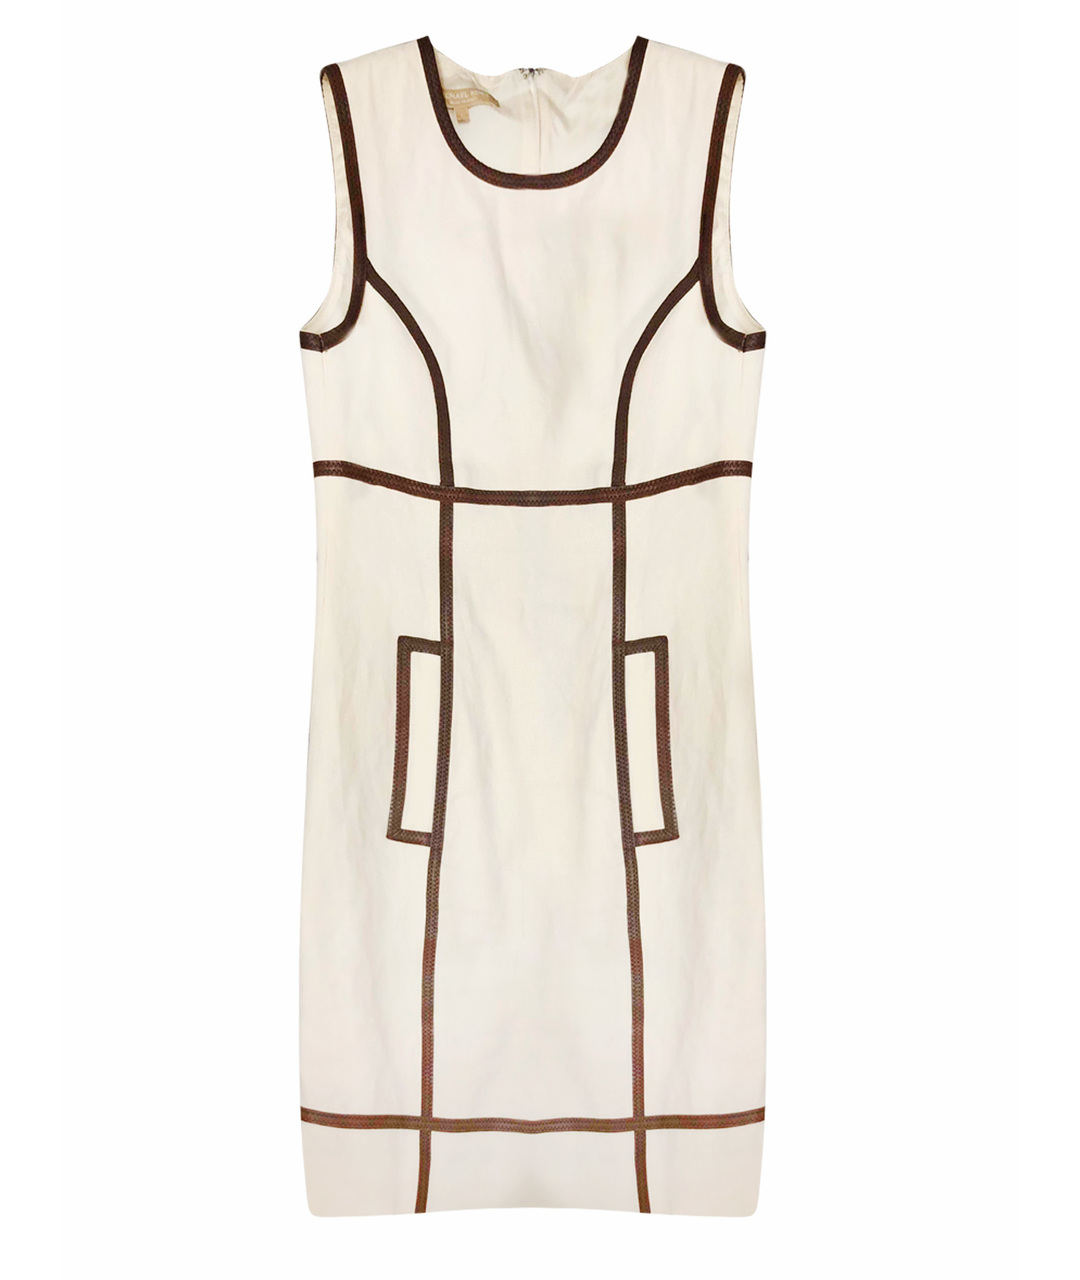 MICHAEL KORS Бордовое вискозное повседневное платье, фото 1